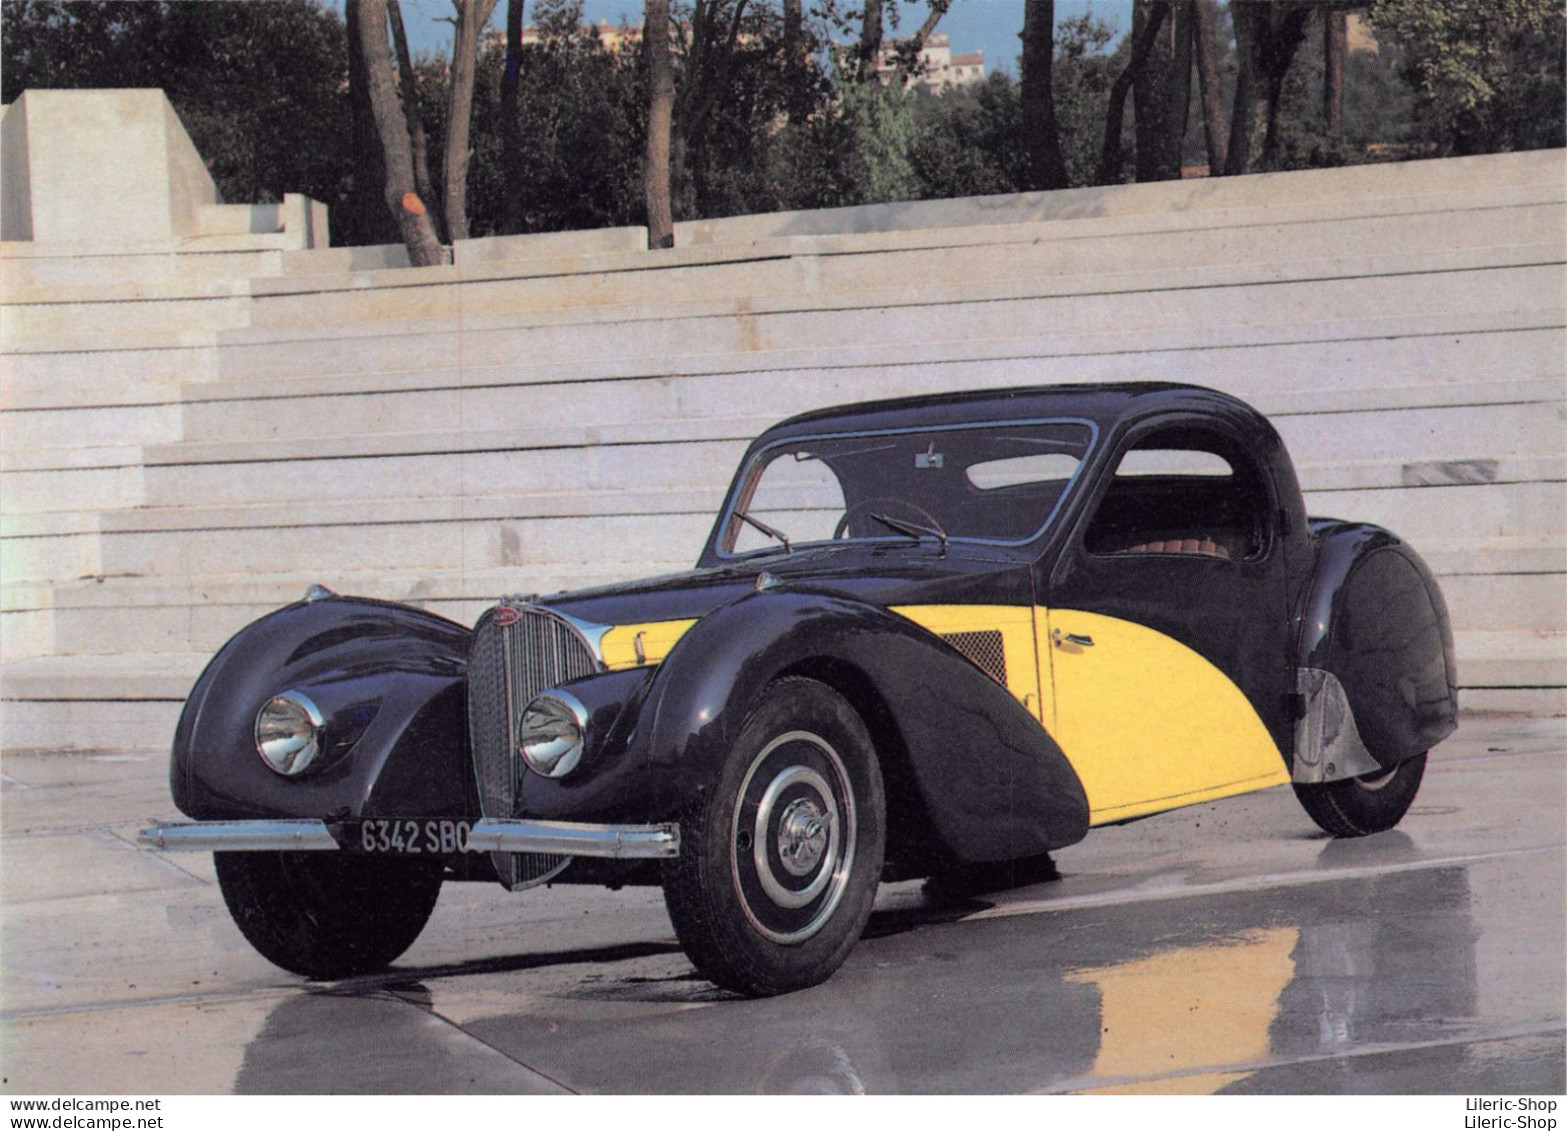 BUGATTI « Atalante » 57 S (1938) 8 Cylindres En Ligne Double Arbre à Cames En Tête 3 300 Cc 200 Km/h - PKW